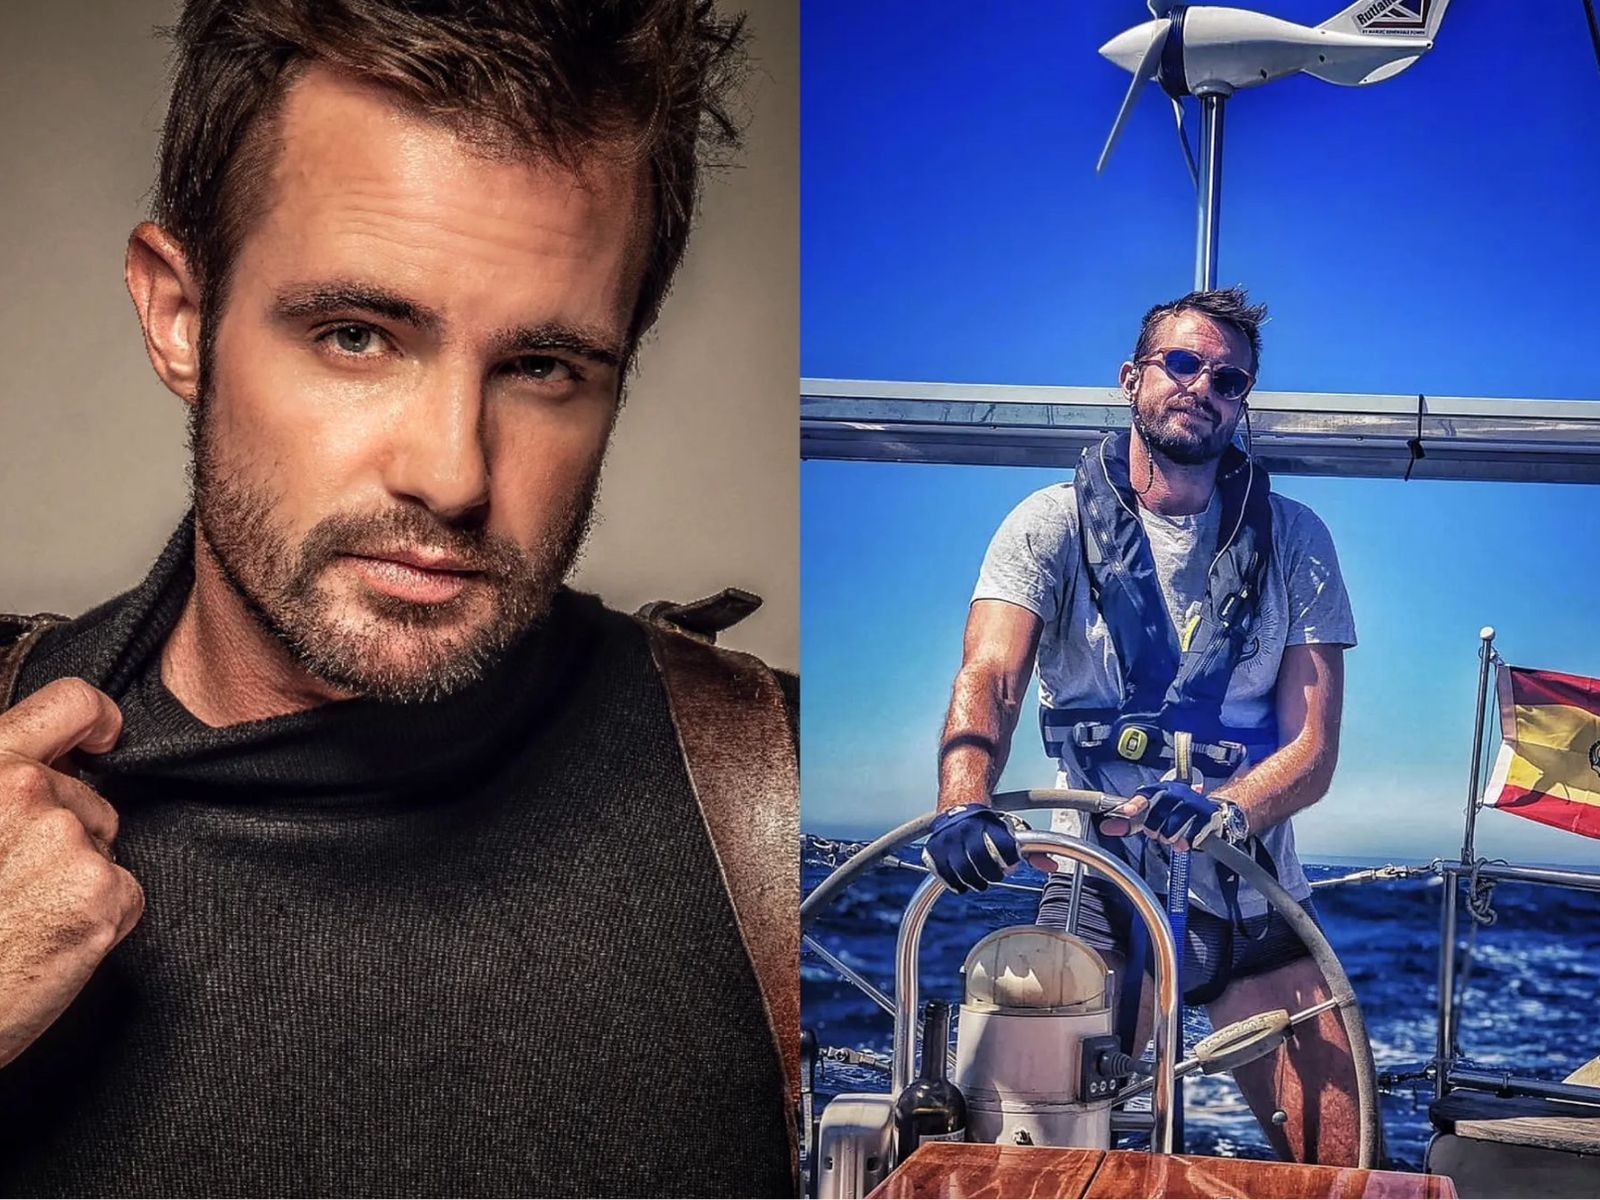 Max Fercondini mora num barco desde 2018 e deixou de lado a carreira de ator — Foto: Reproduçõa/Instagram